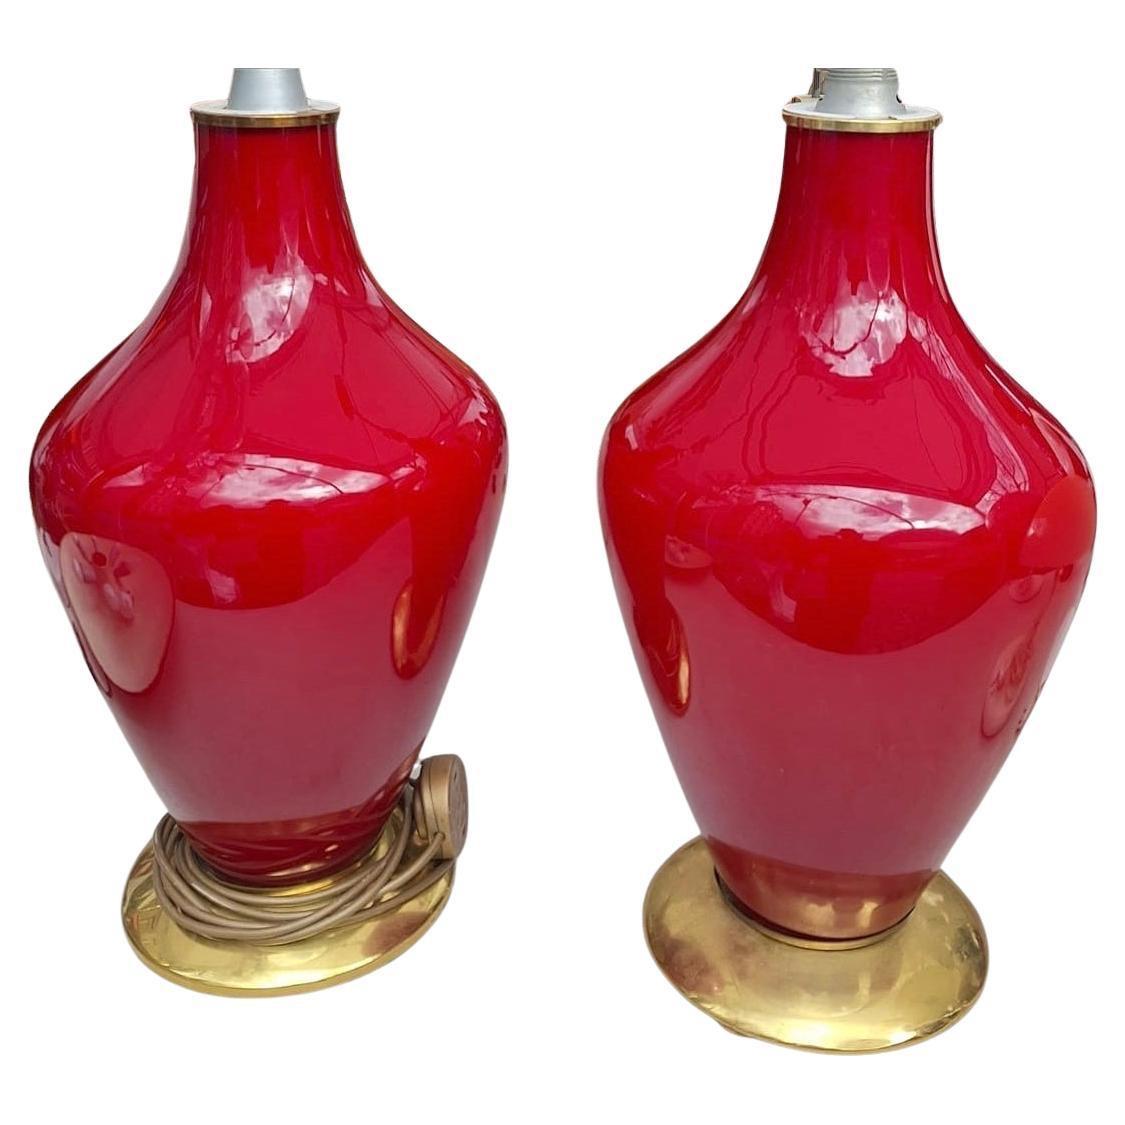 Paire de lampes de table et de lampadaires italiens en opaline rouge, datant des années 1970, avec des bases dorées.  

Mesures : 
Hauteur du corps en verre : 21.2